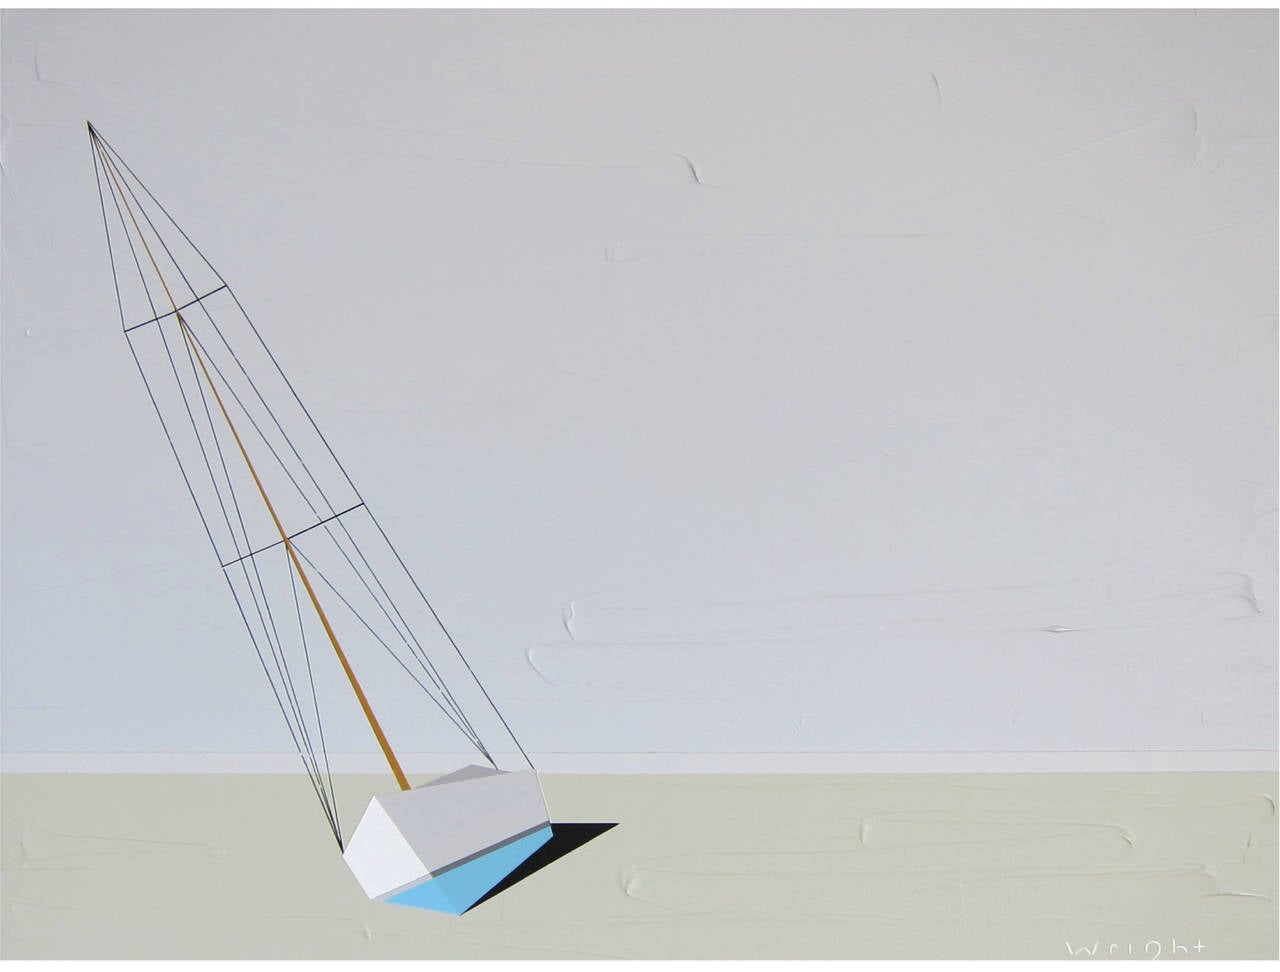 Darling, huile, acrylique, voilier, texturé, eau, maison de plage, bleu, voile - Painting de Jason Wright